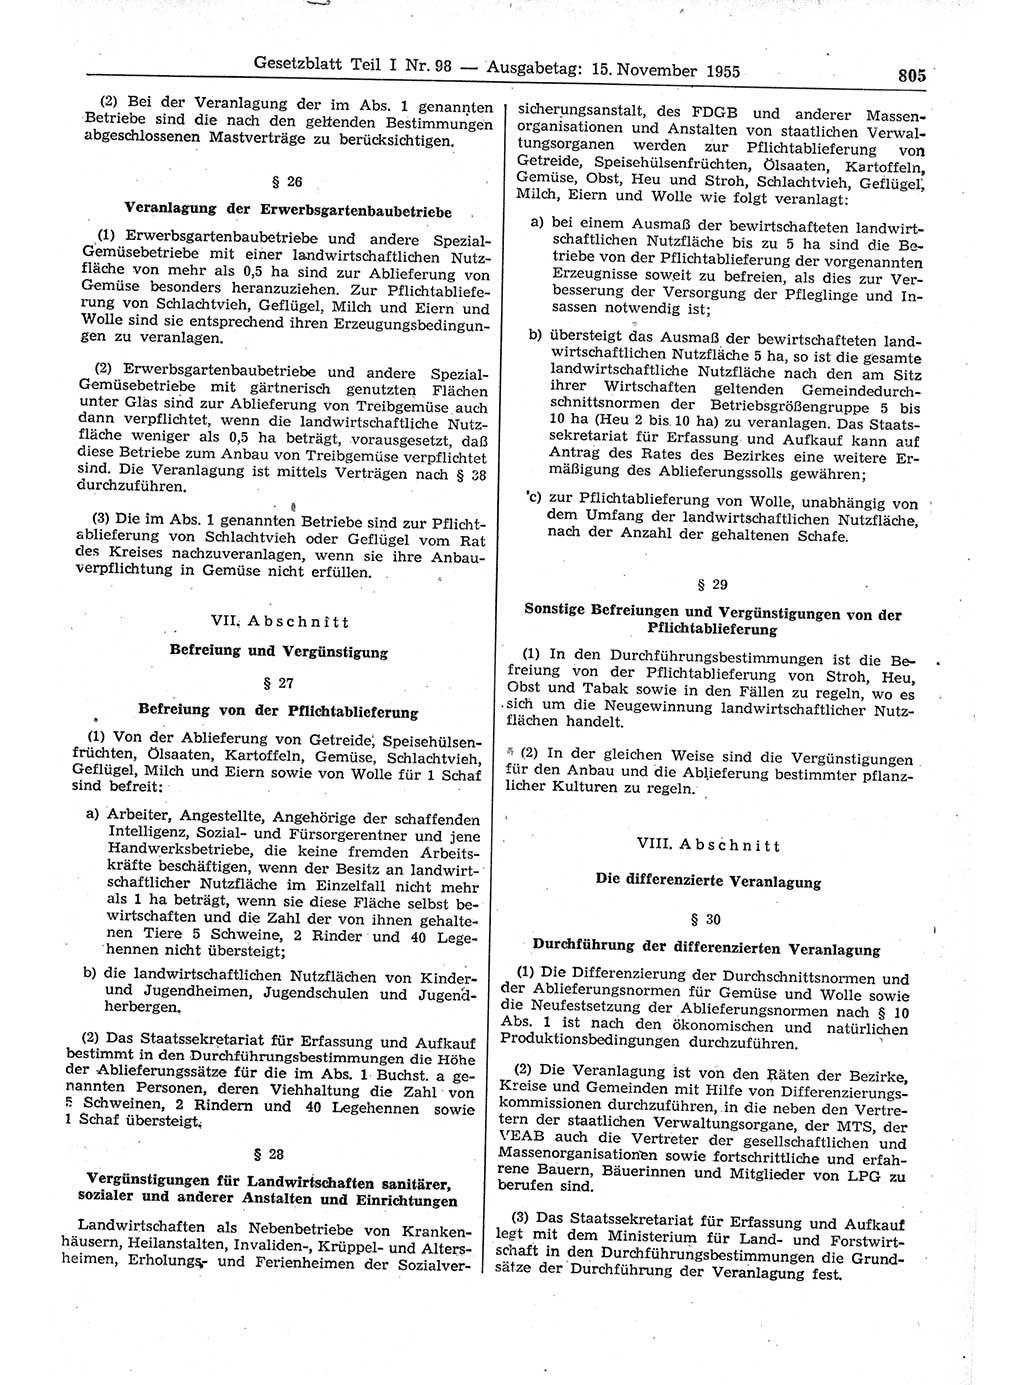 Gesetzblatt (GBl.) der Deutschen Demokratischen Republik (DDR) Teil Ⅰ 1955, Seite 805 (GBl. DDR Ⅰ 1955, S. 805)